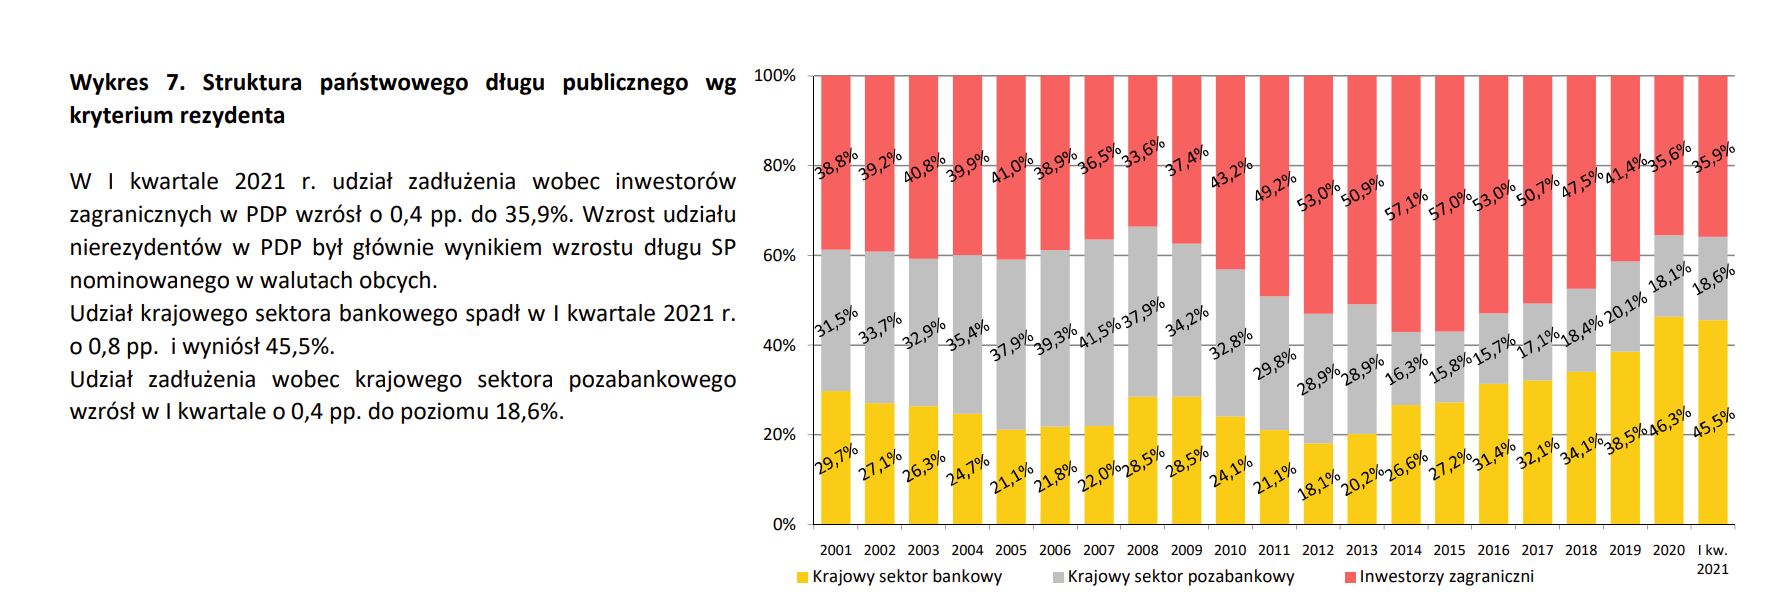 Schuldenstruktur Polens